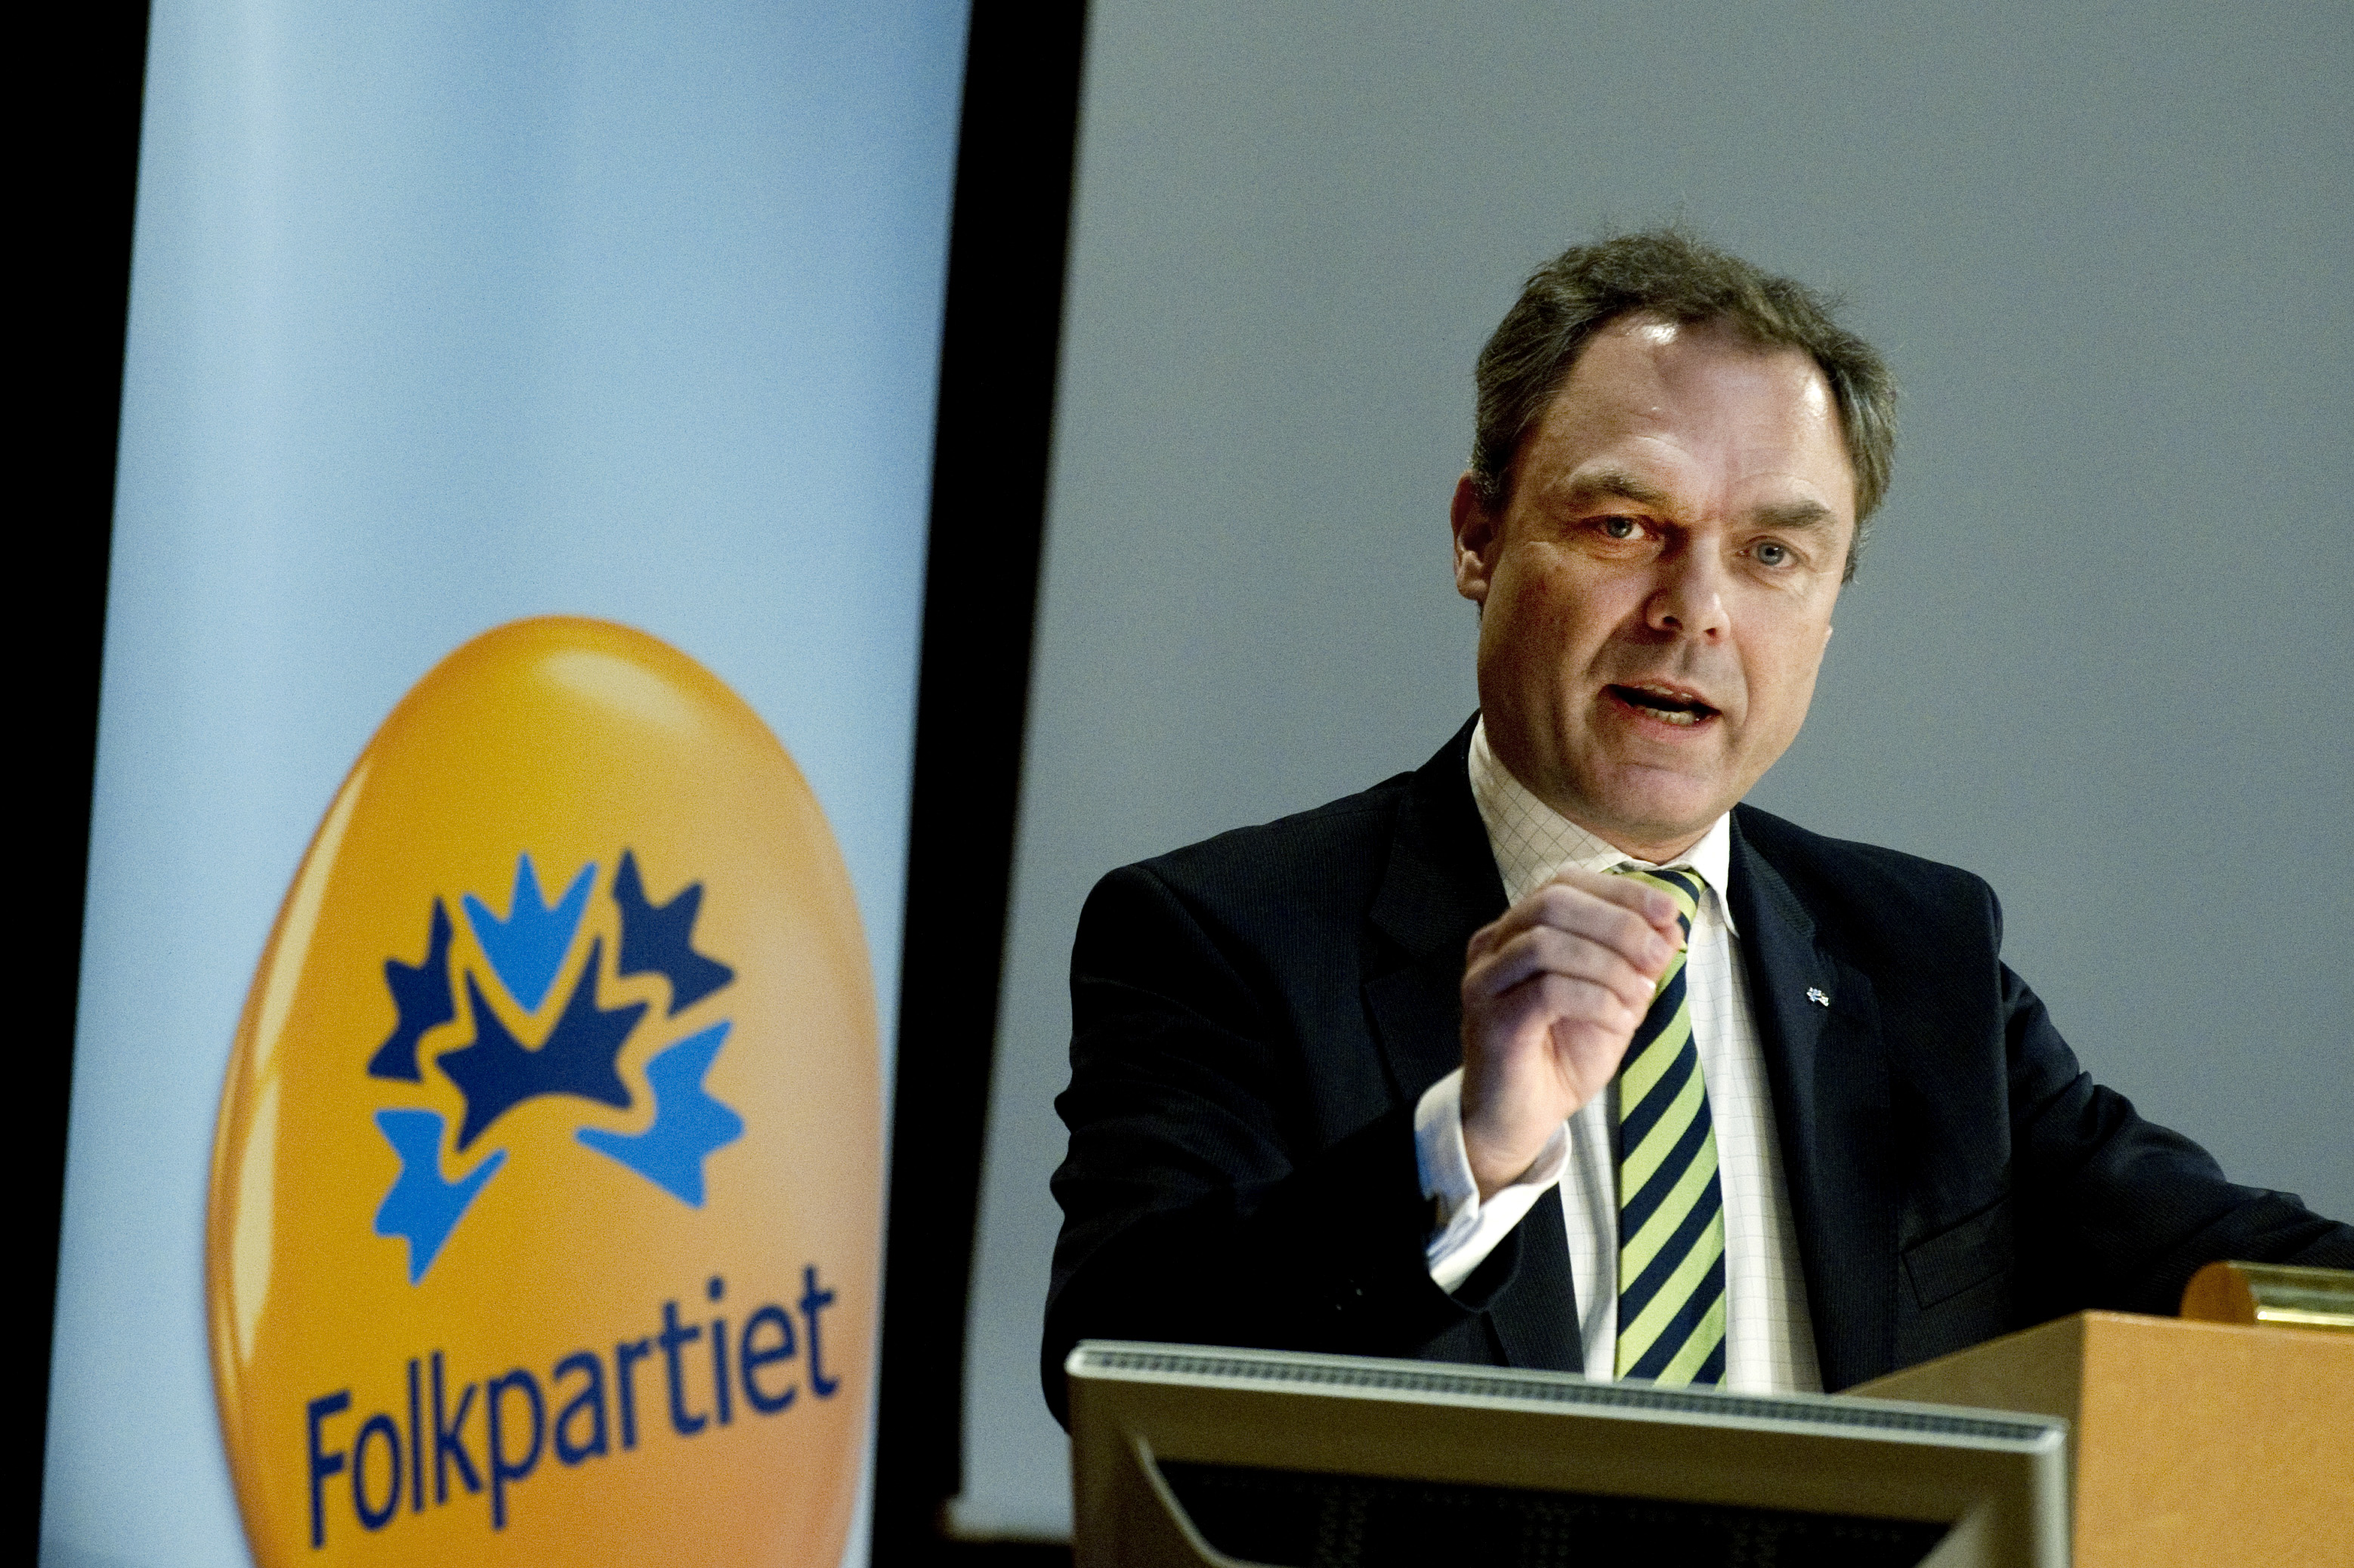 ... skolan. I stället riktar man blicken mot Finland, vars skolsystem Sveriges skolminister, Jan Björklund (fp), också gärna talar varmt om.